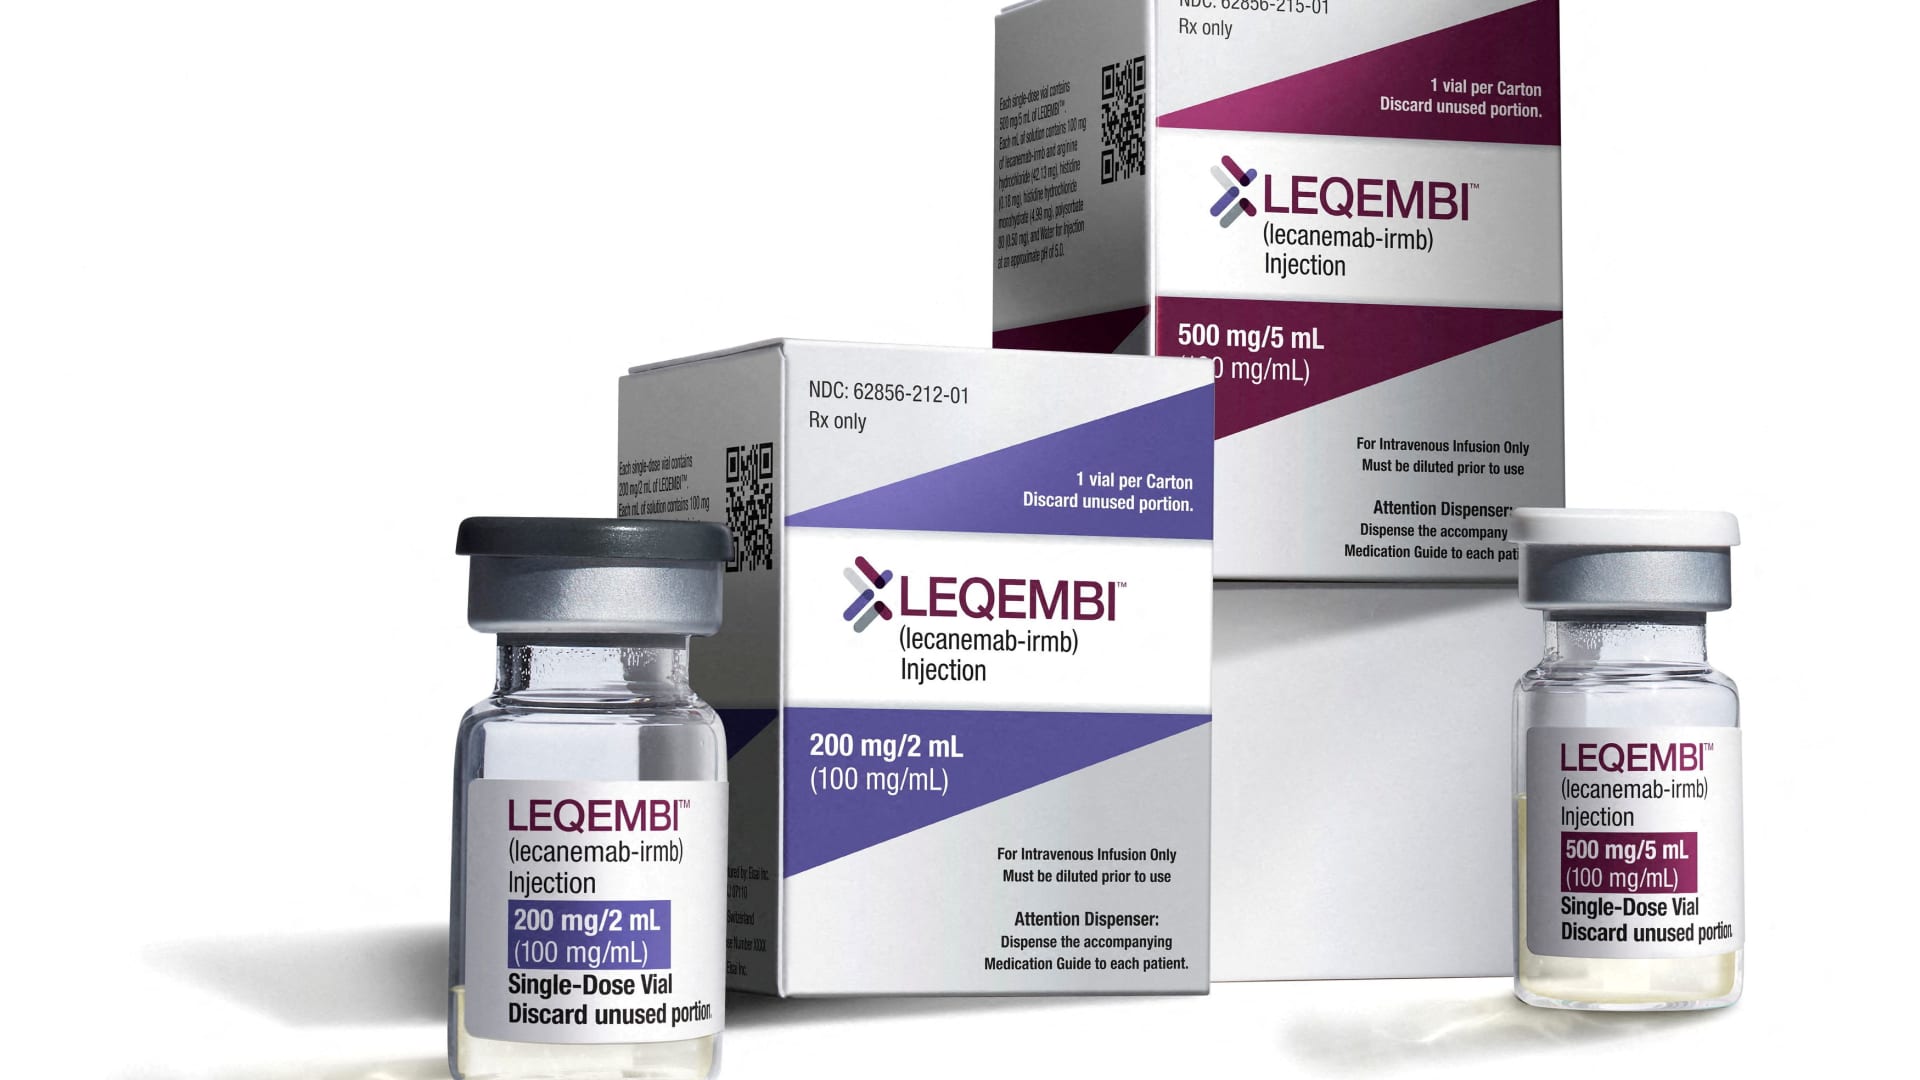 FDA advisers are considering the Alzheimer’s drug Leqembi for full approval